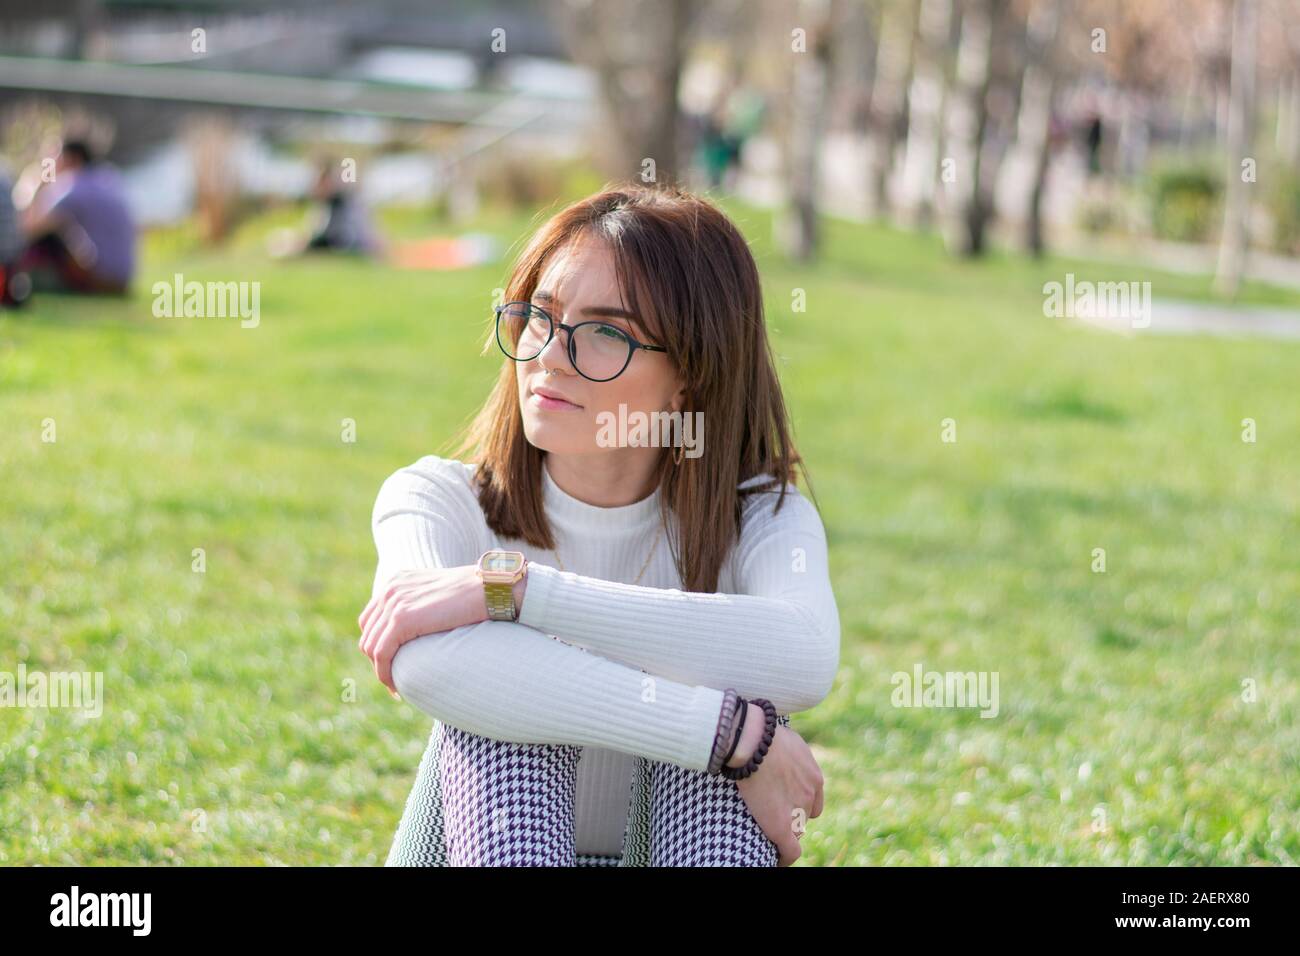 Jeune fille, assise dans l'herbe d'un parc, à la recherche de son droit Banque D'Images